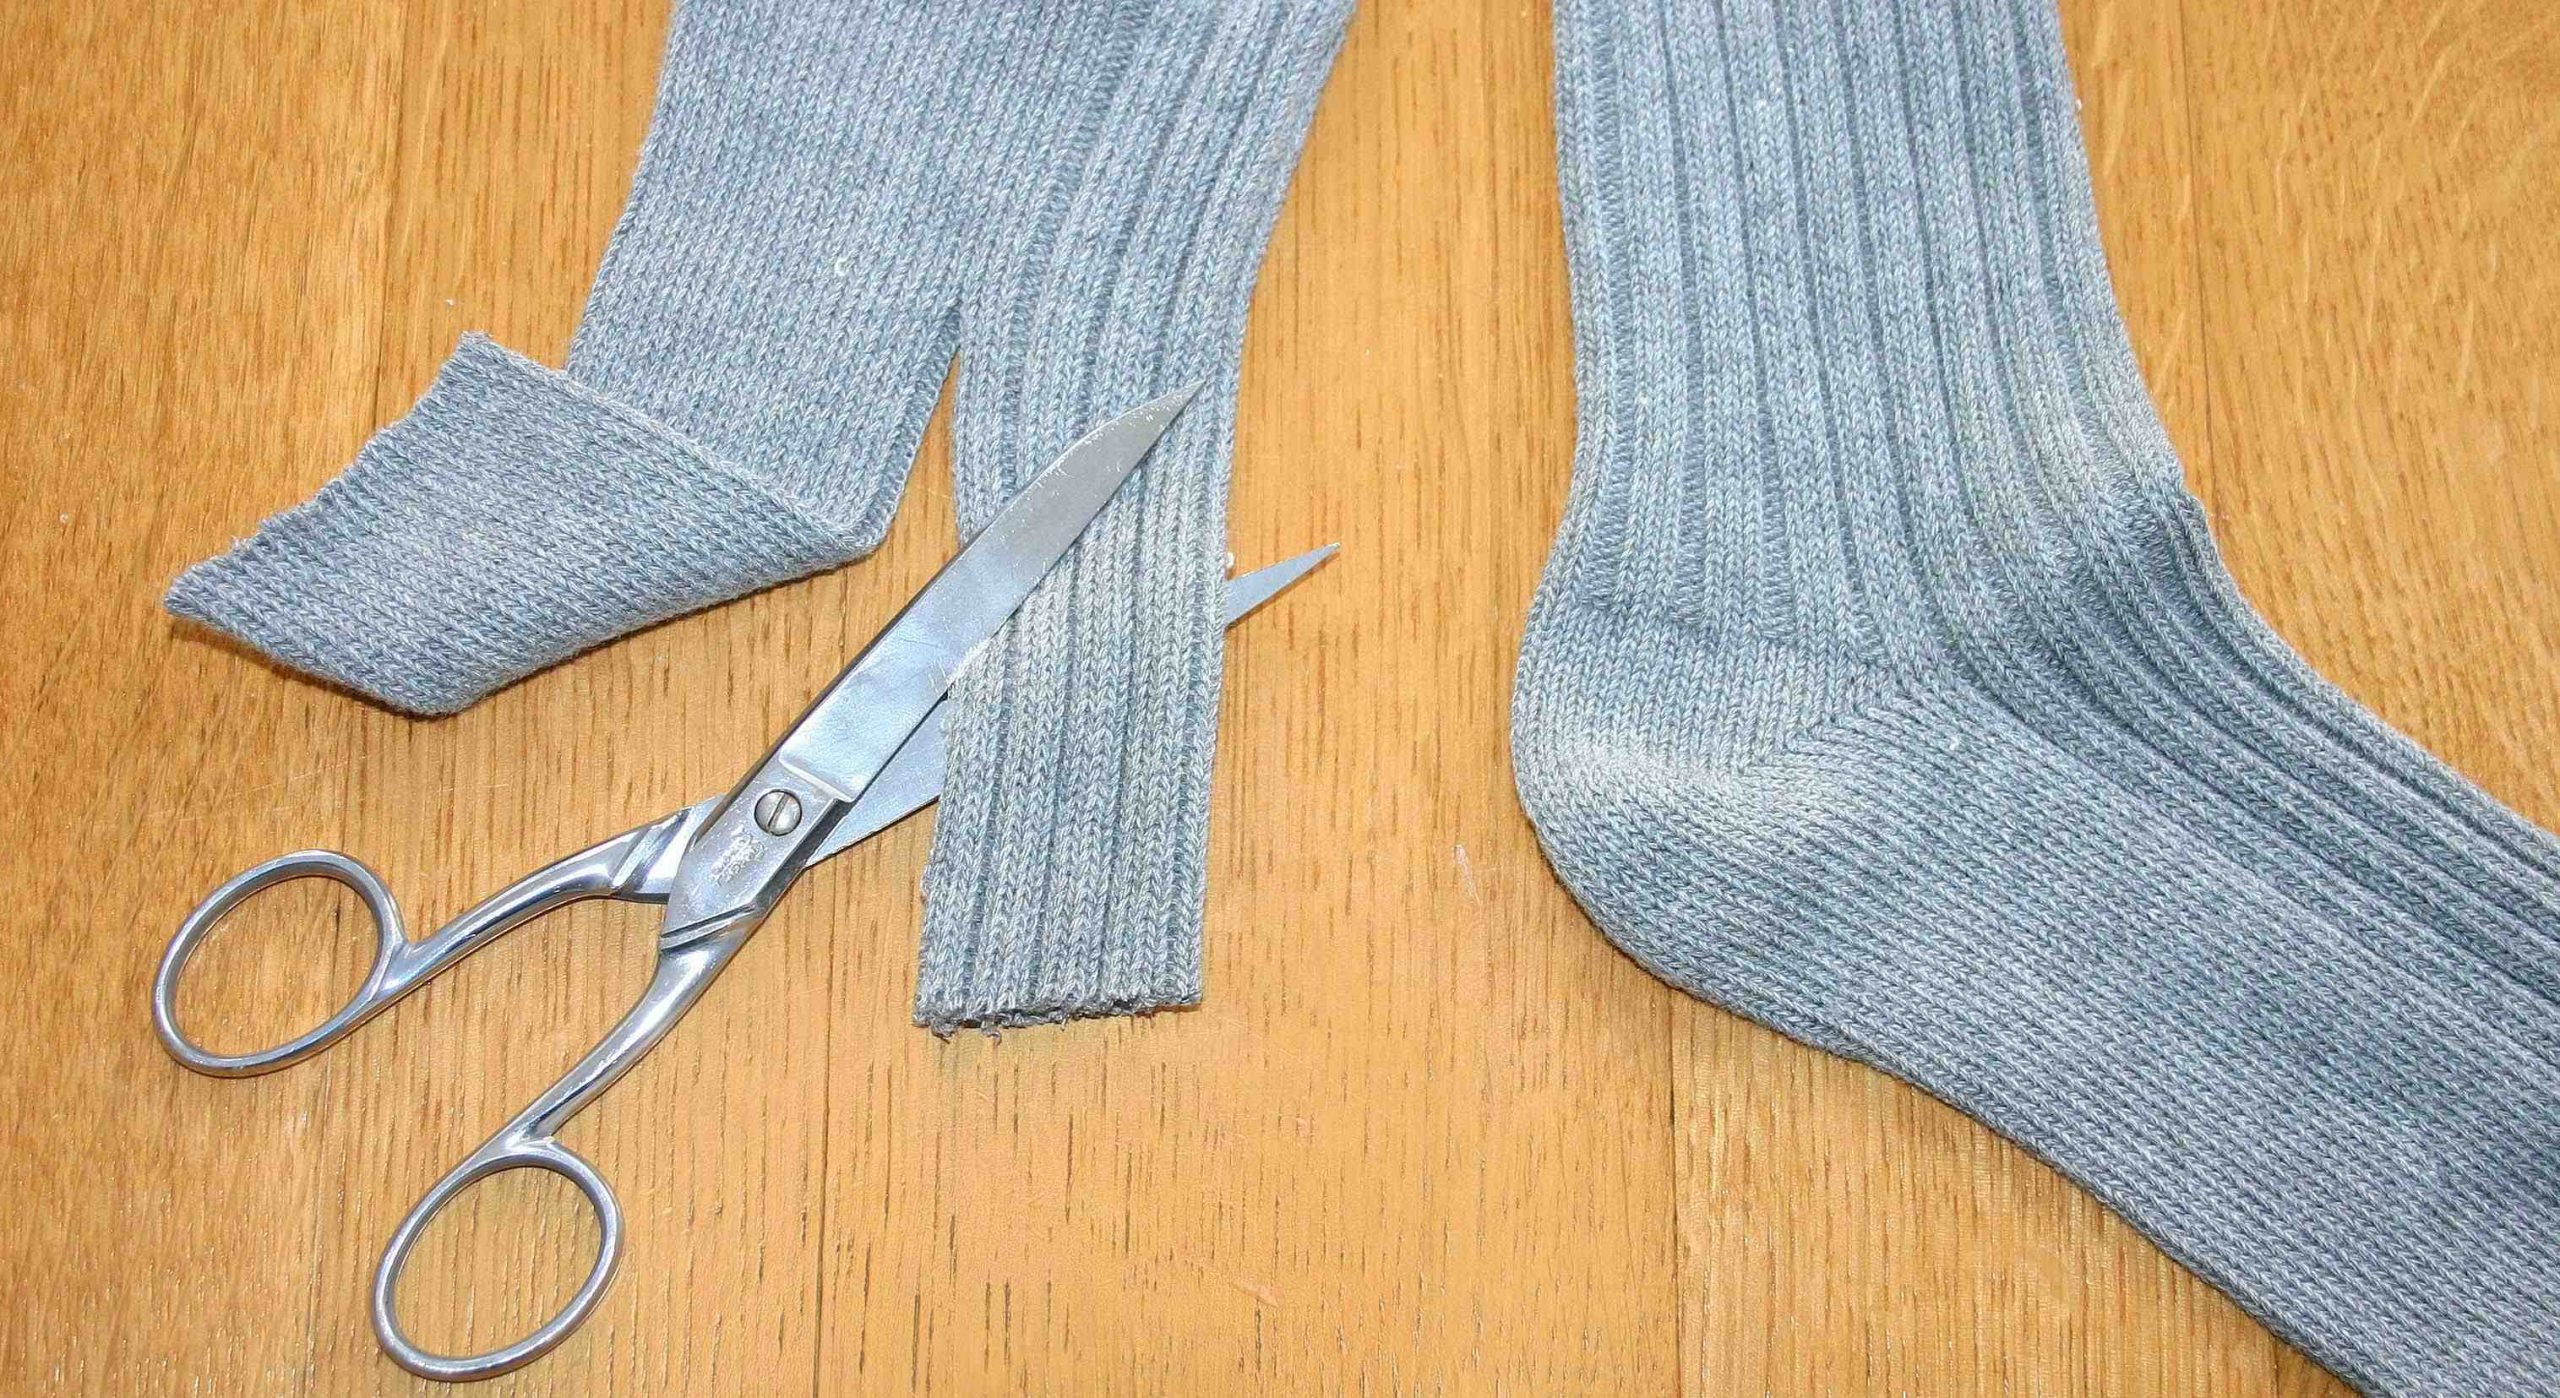 Comment tricoter des gants avec vos doigts?